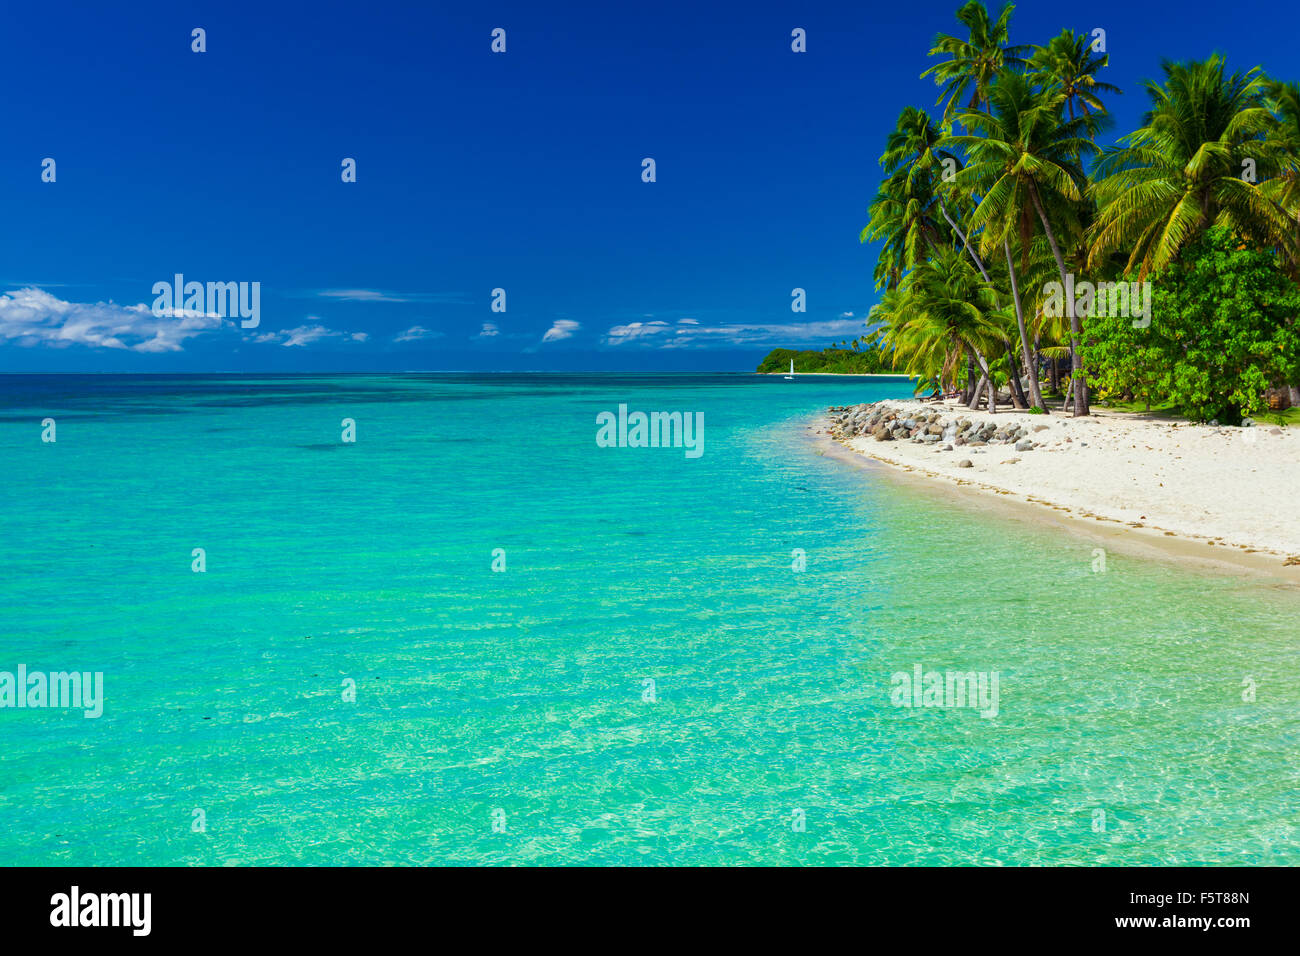 Isola tropicale nelle isole Figi con spiaggia di sabbia fine e chiara laguna Foto Stock